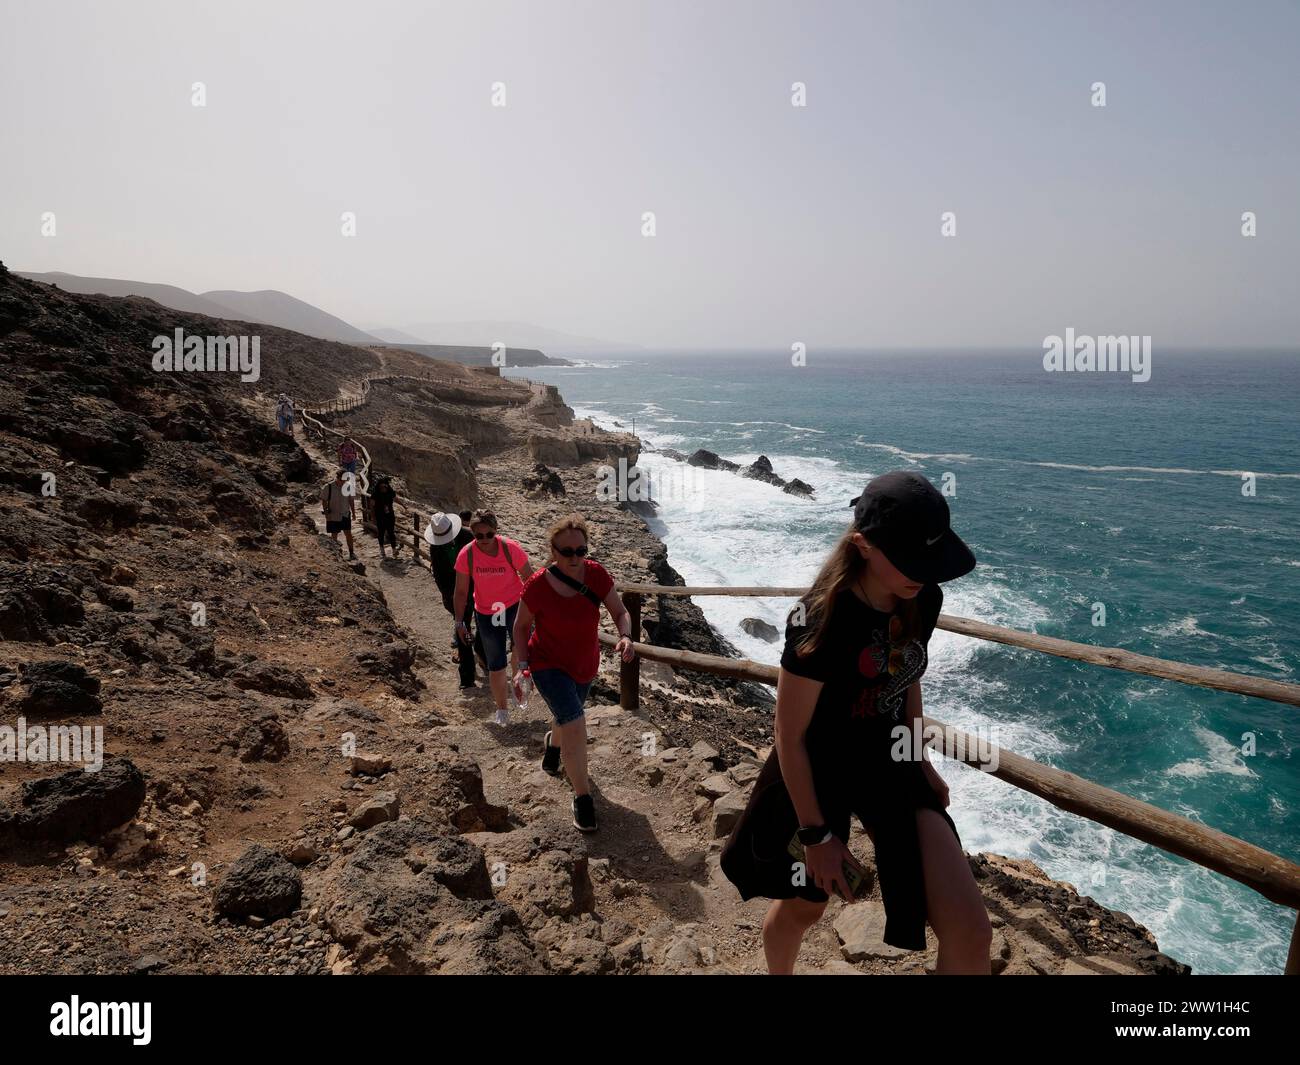 Le sentier des dunes fossiles d'Ajuy et les paysages étonnants des grottes d'Ajuy, Ajuy, Pajara, côte ouest de Fuerteventura, îles Canaries, Espagne Banque D'Images